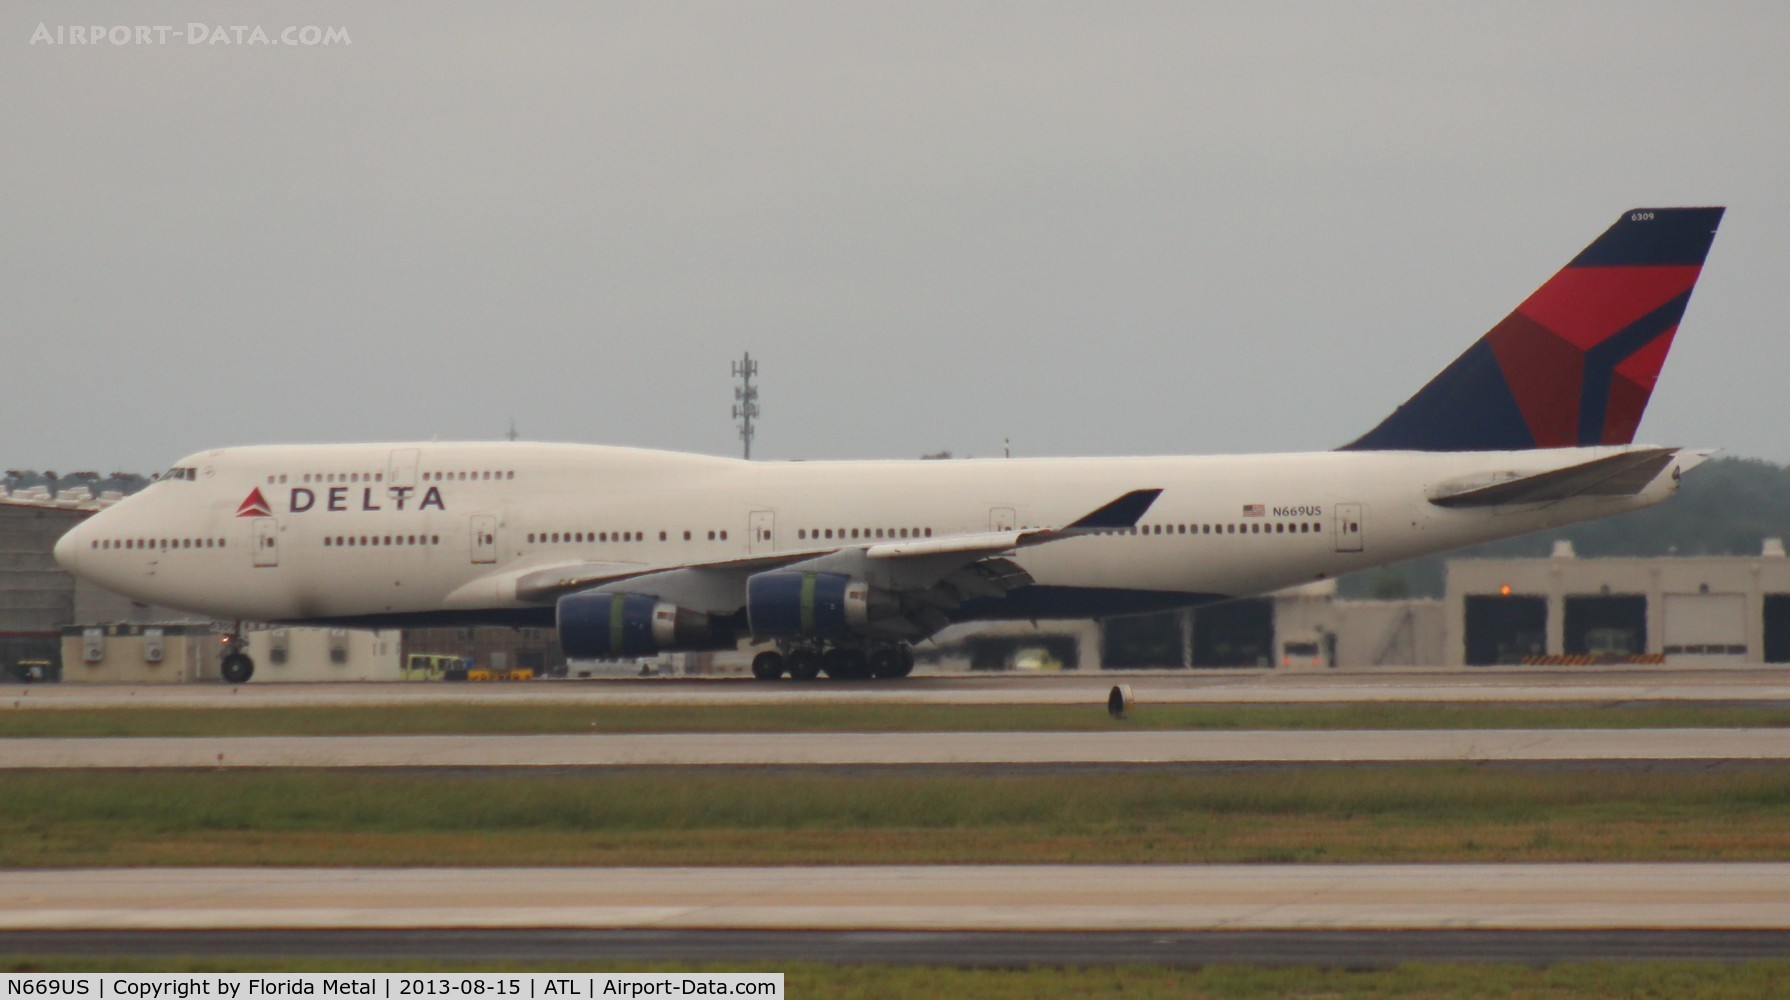 N669US, 1990 Boeing 747-451 C/N 24224, Delta 747-400